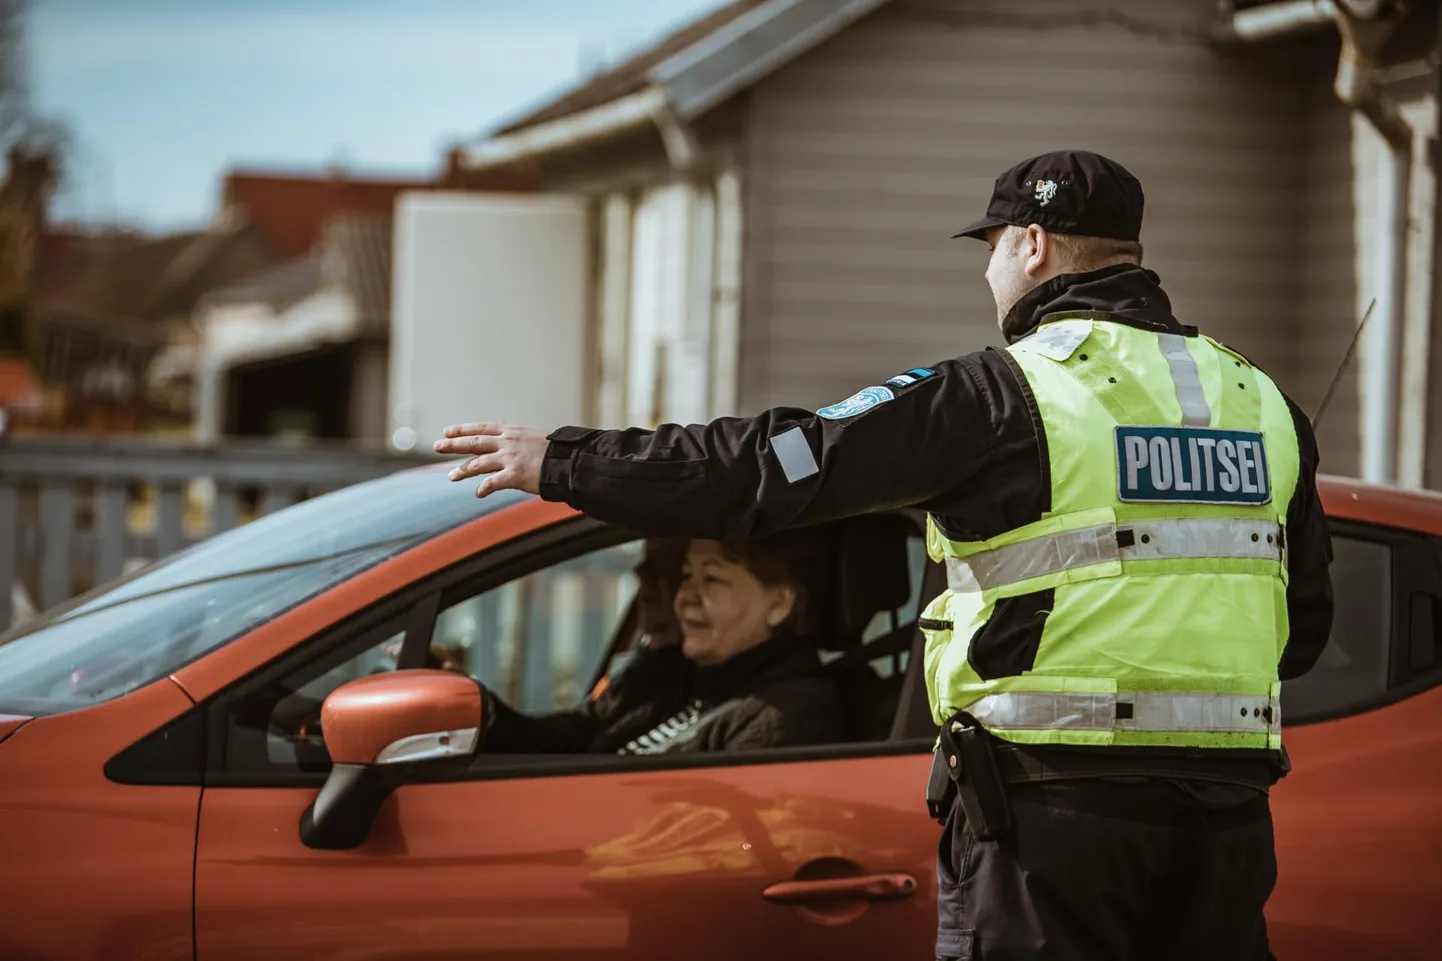 Abipolitseinikel on alates augustikuu algusest õigus iseseisvalt sõidukeid peatada ja inimestele alkoholi- või narkokontrolli teha – nagu politseinikelgi.